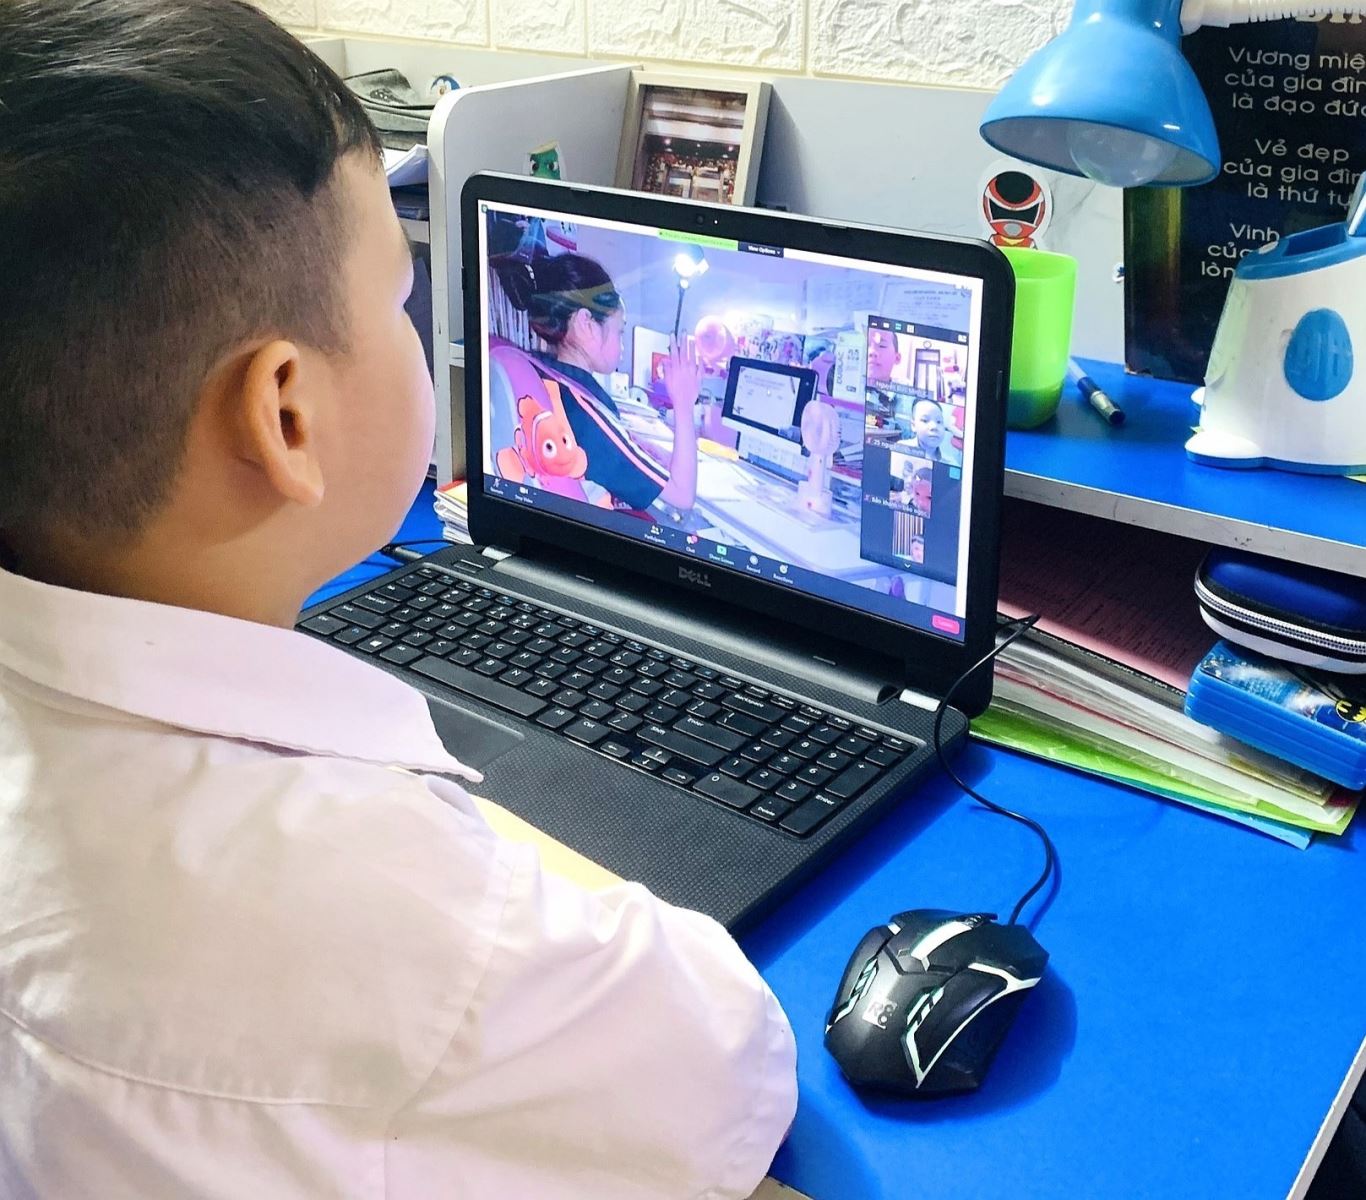 Hà Nội: Học sinh tiếp tục học trực tuyến, chuẩn bị tiêm vaccine Covid-19 - Ảnh 1